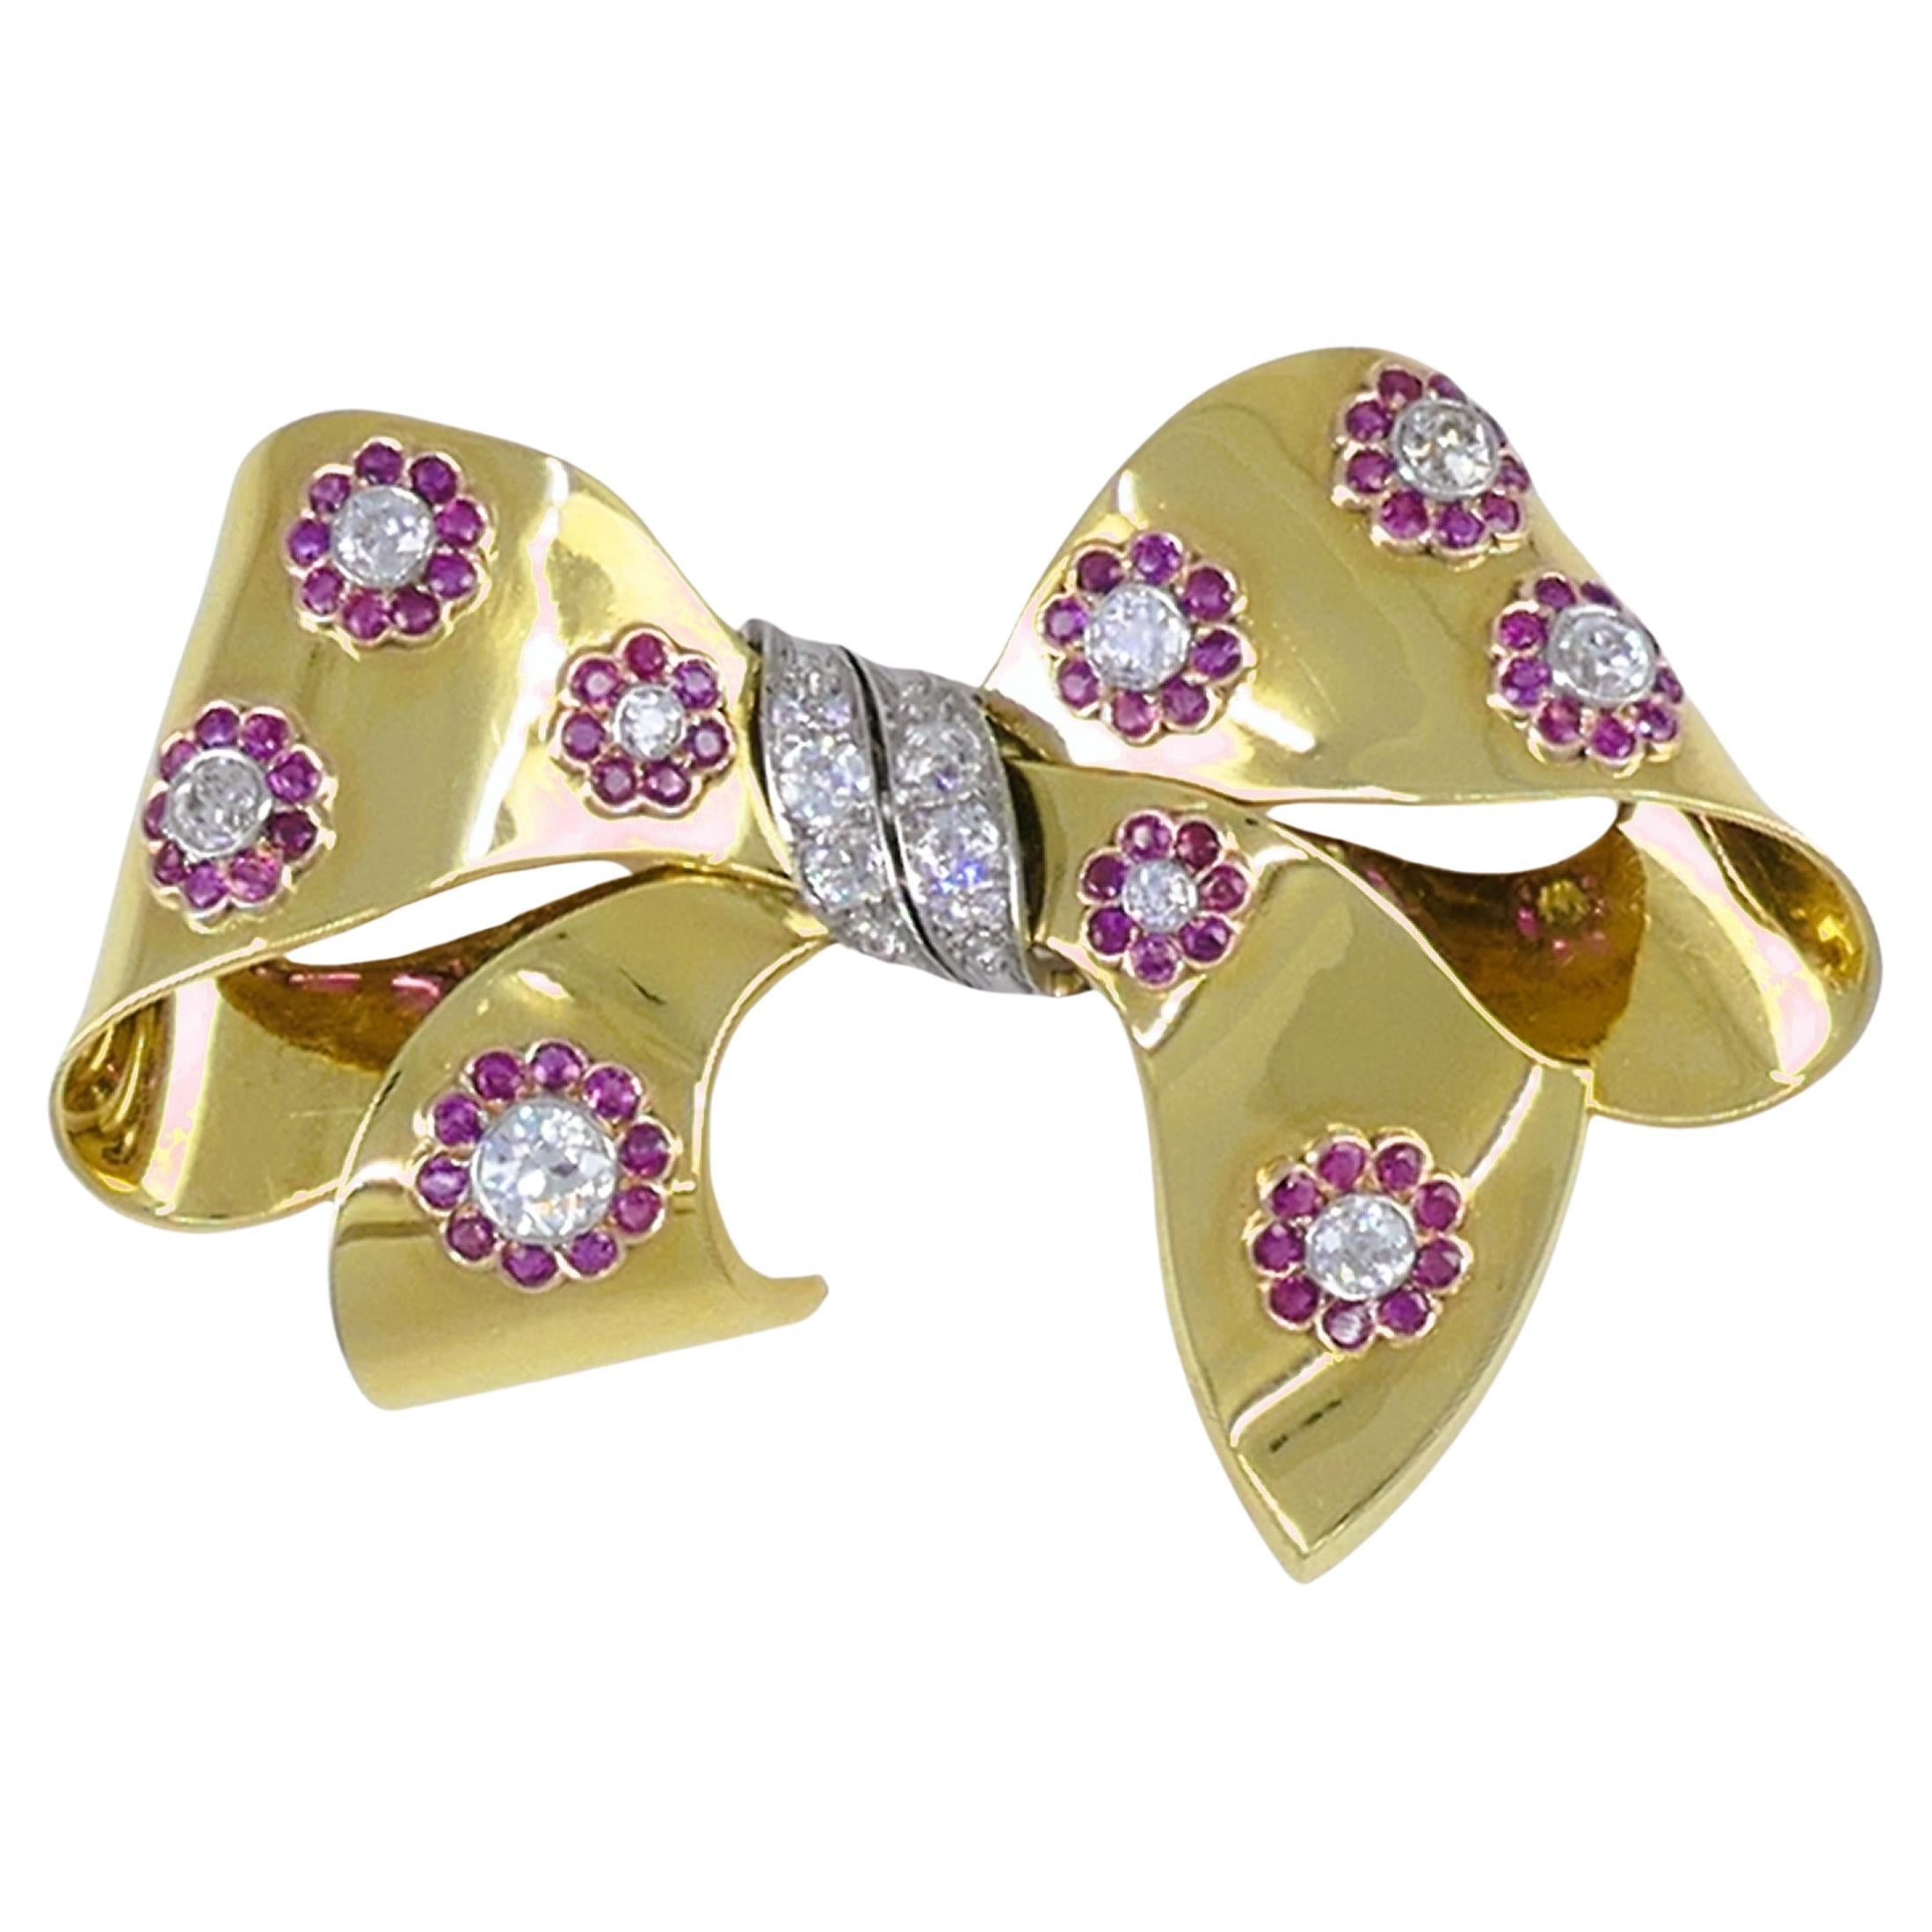 Retro Bow Brosche Pin 18k Gold Rubin Diamant Estate Jewelry